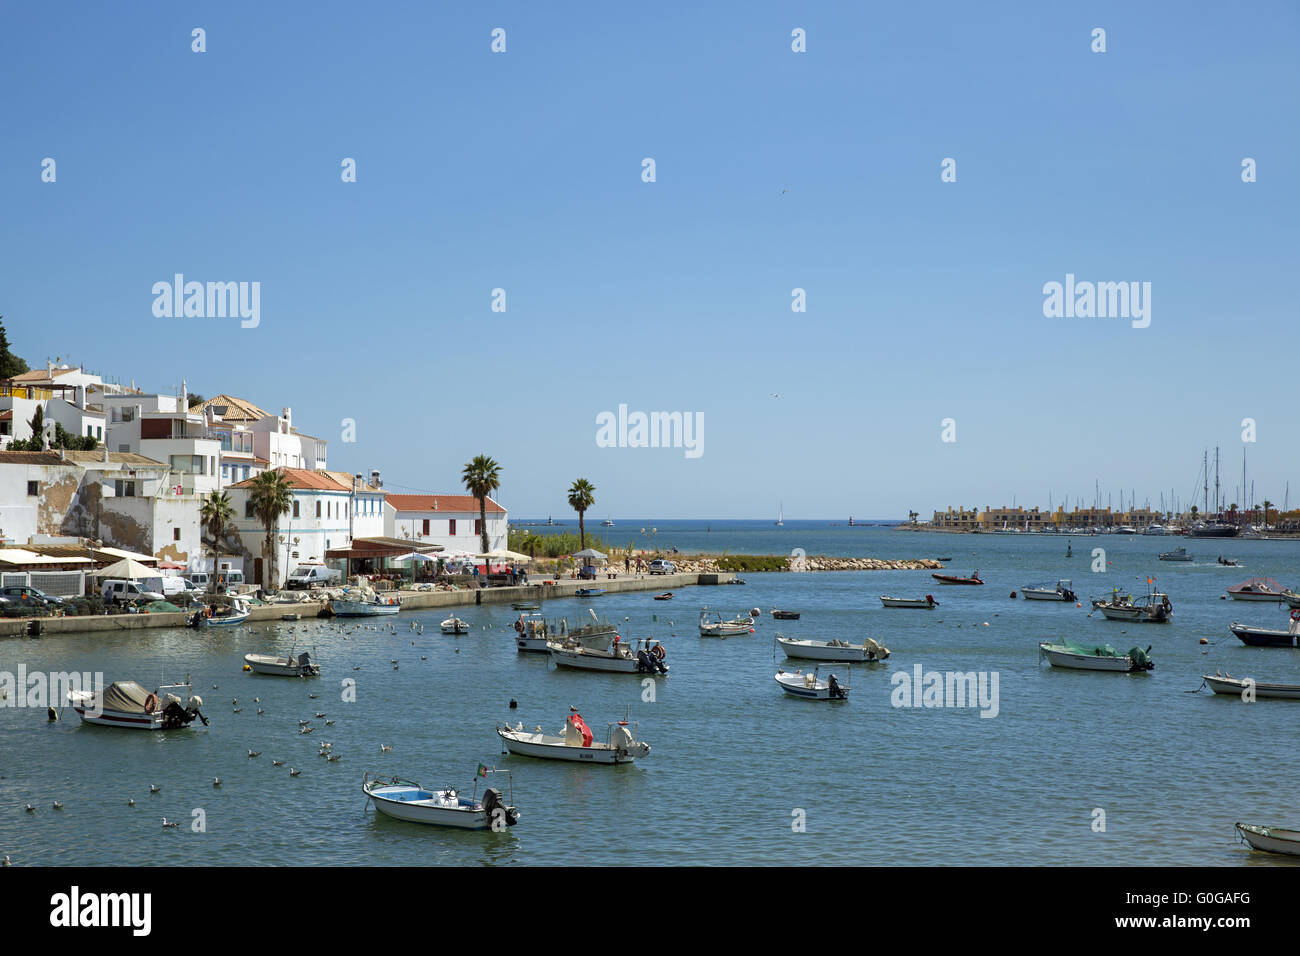 Los barcos en la bahía frente a la ciudad vieja de Ferragudo, Algarve, Portugal, Europa Foto de stock